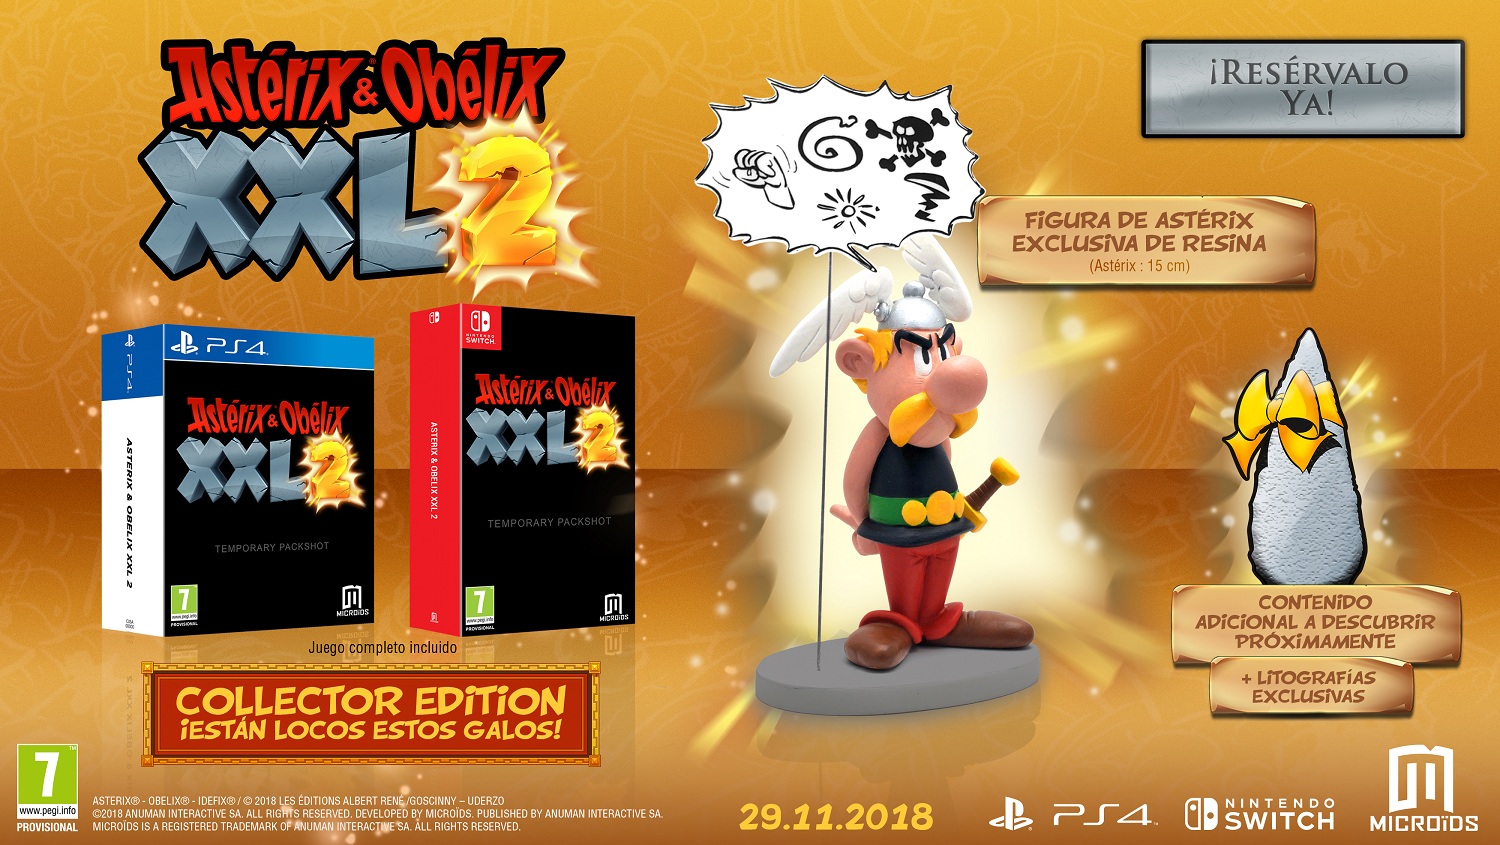 Asterix & Obelix XXL 2 confirma su lanzamiento en PS4, Xbox One y Switch | Presentadas las ediciones especiales